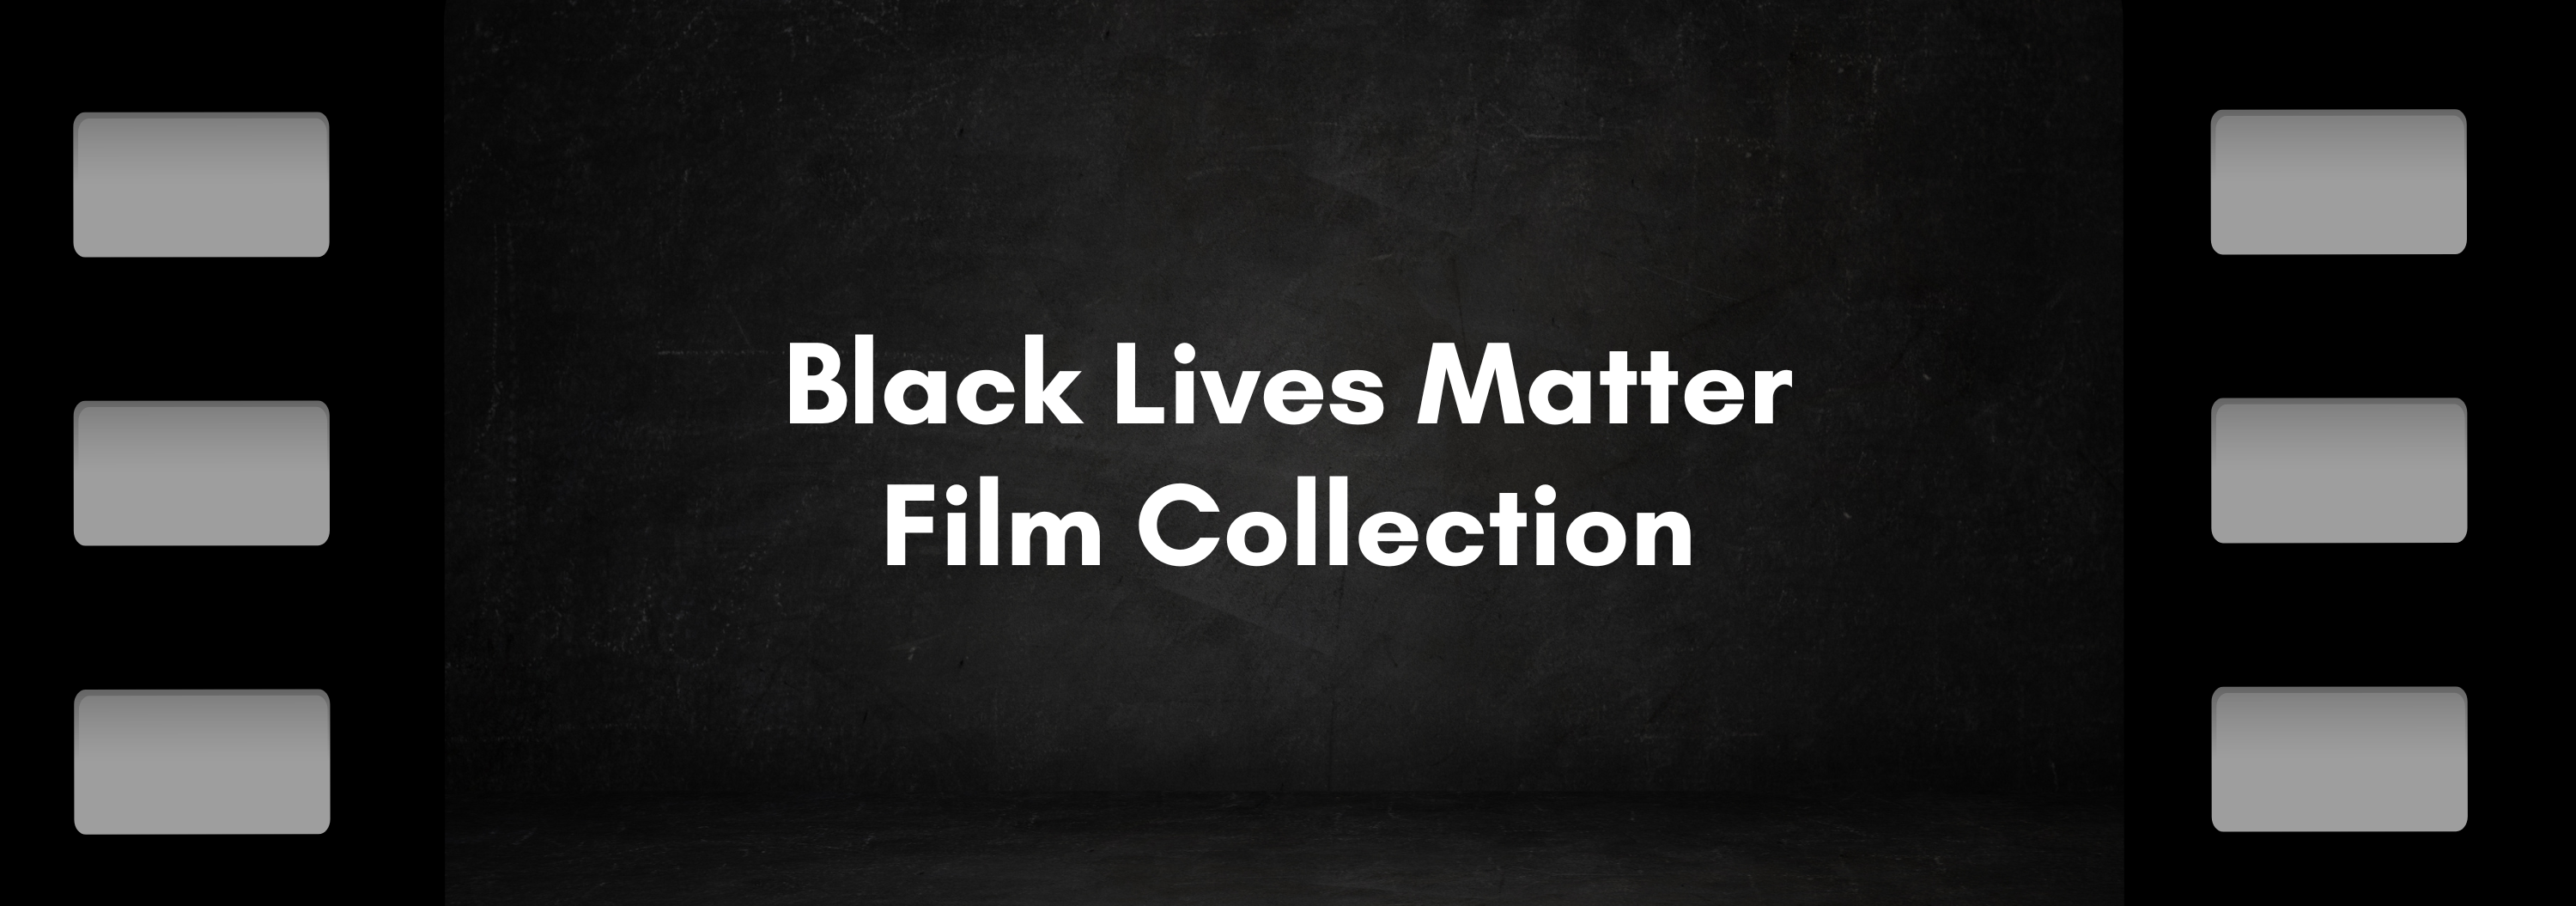 Black Lives Matter Film Collection